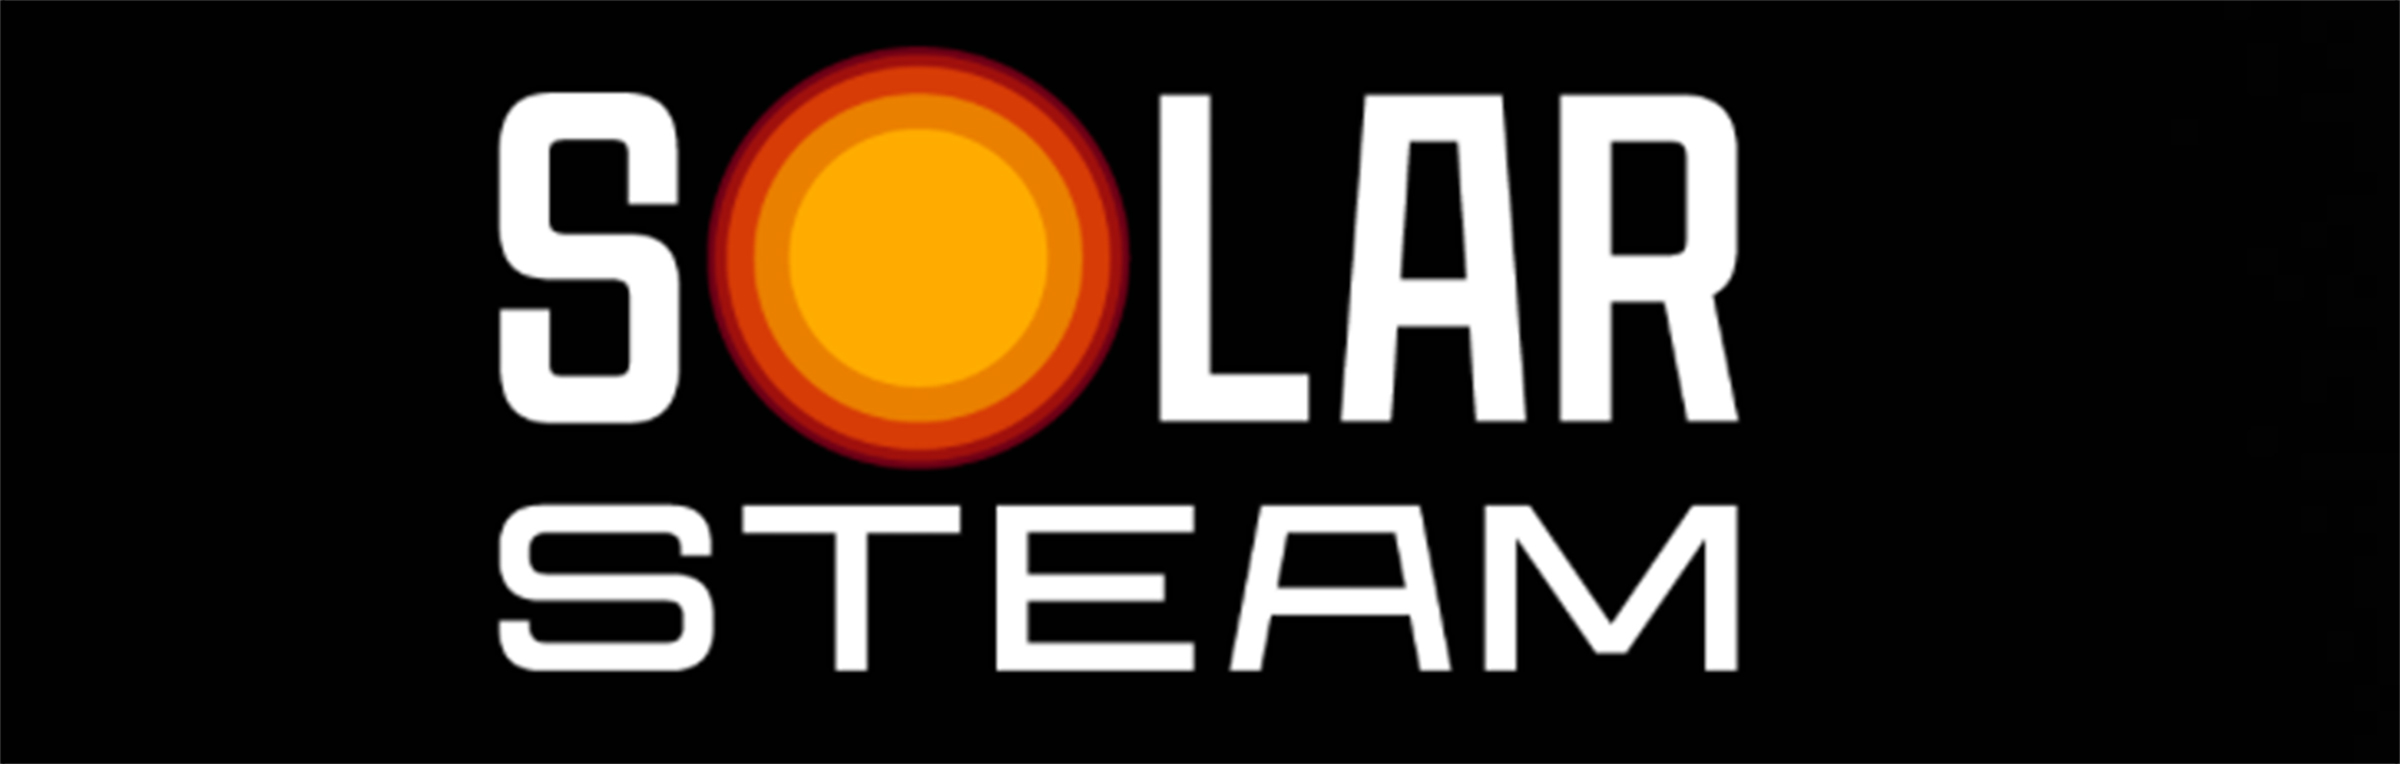 solar-steam